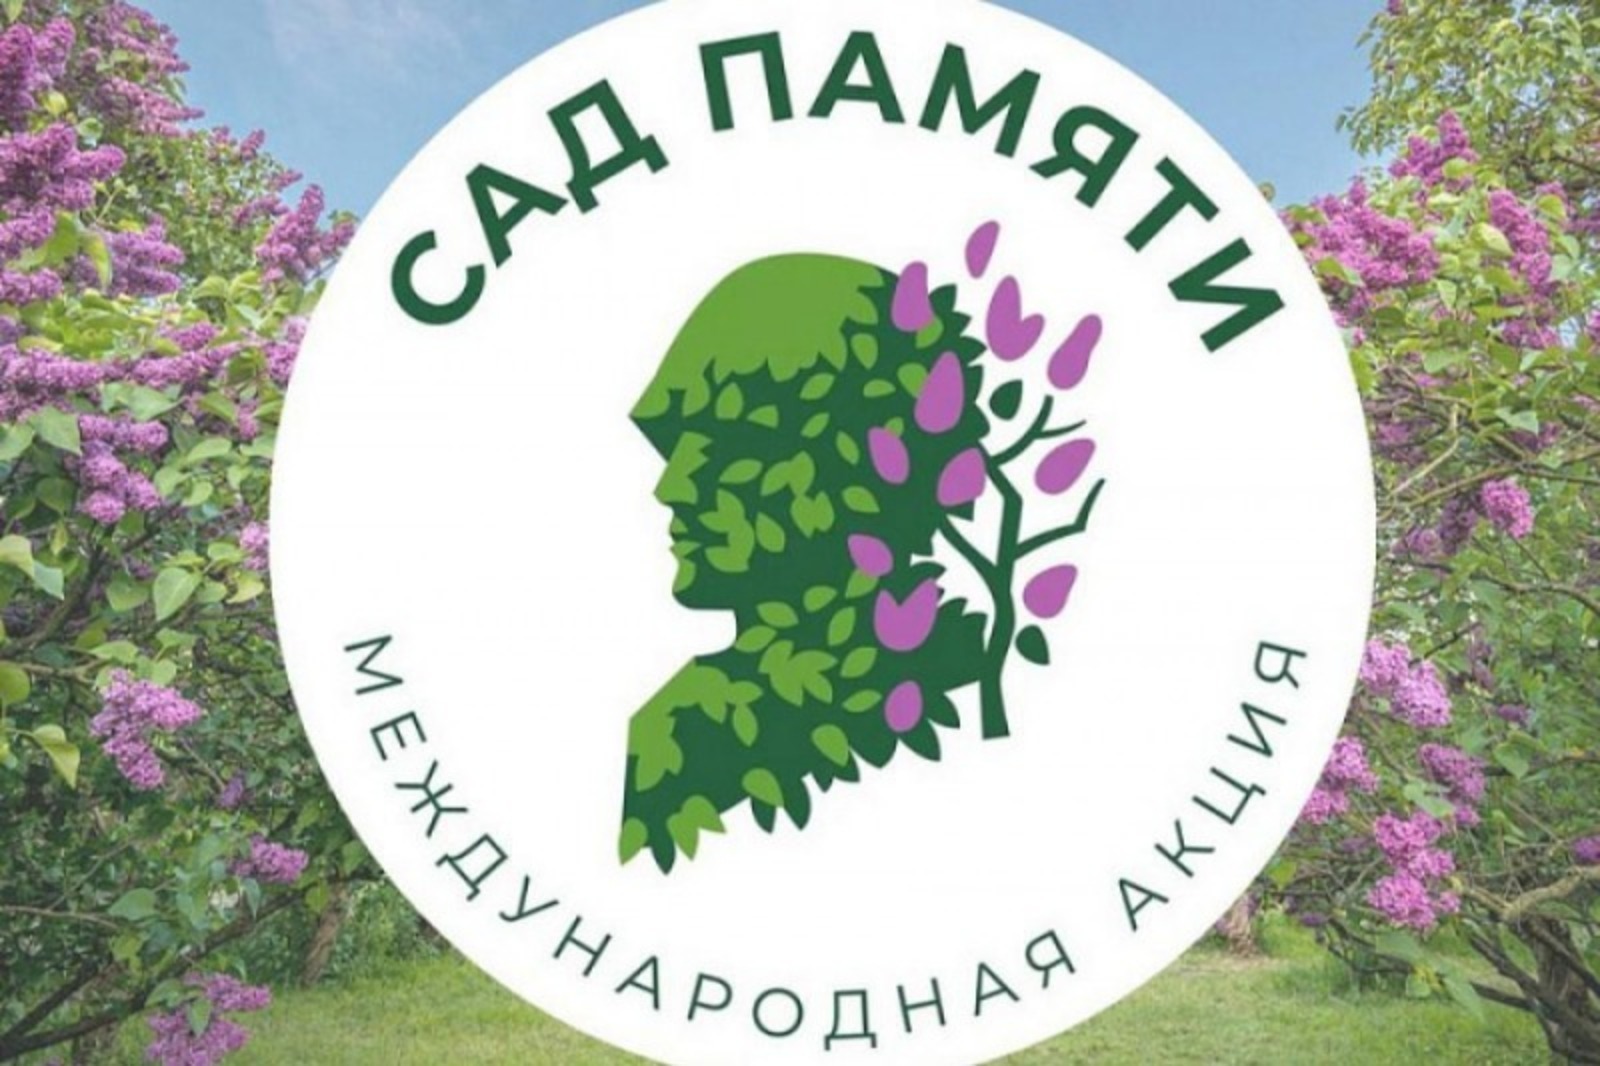 В Башкортостане в рамках акции «Сад памяти» высадят 700 тысяч новых деревьев